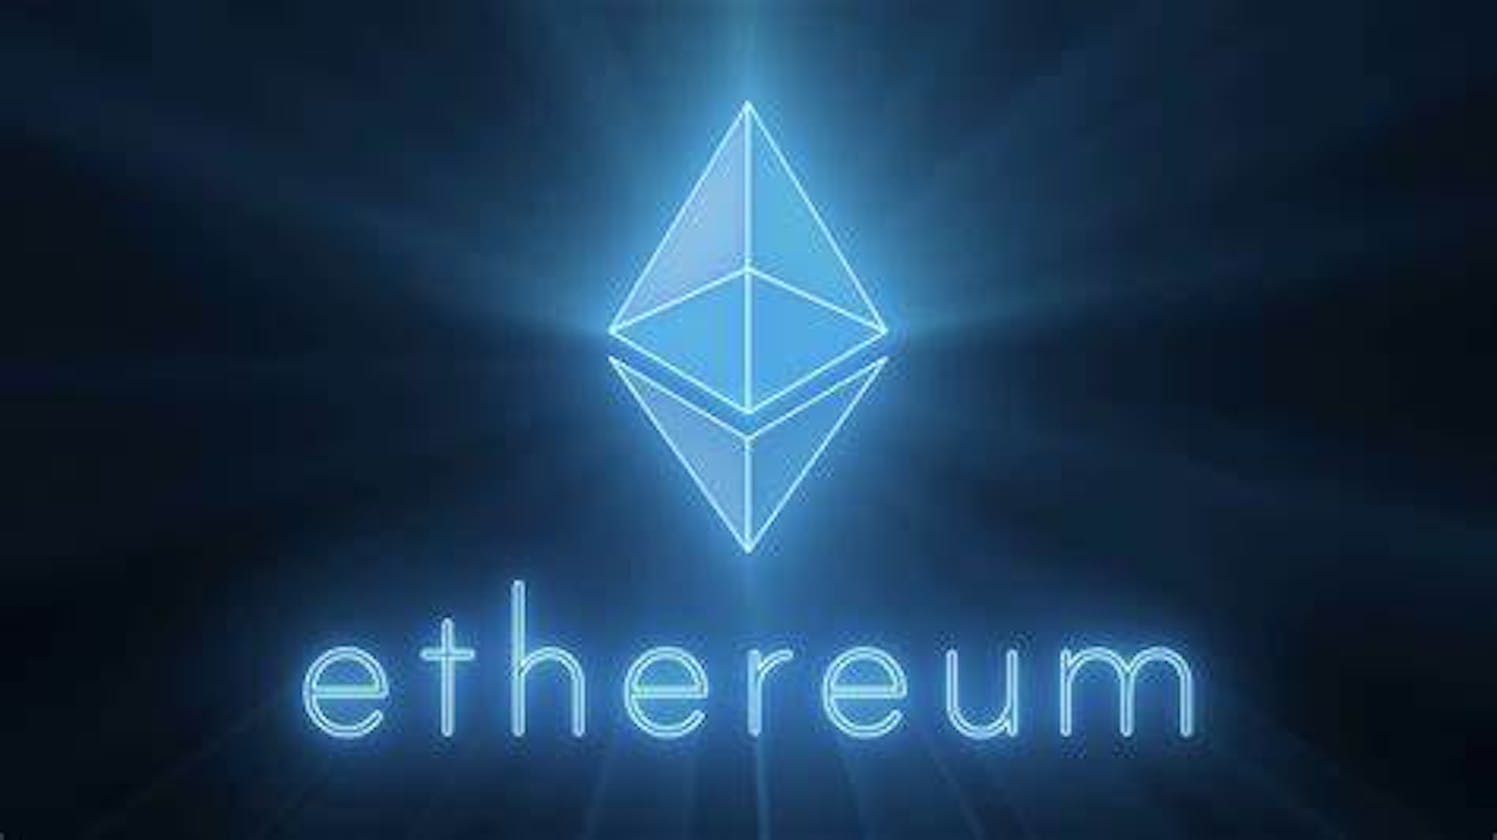 Brief information about Ethereum...